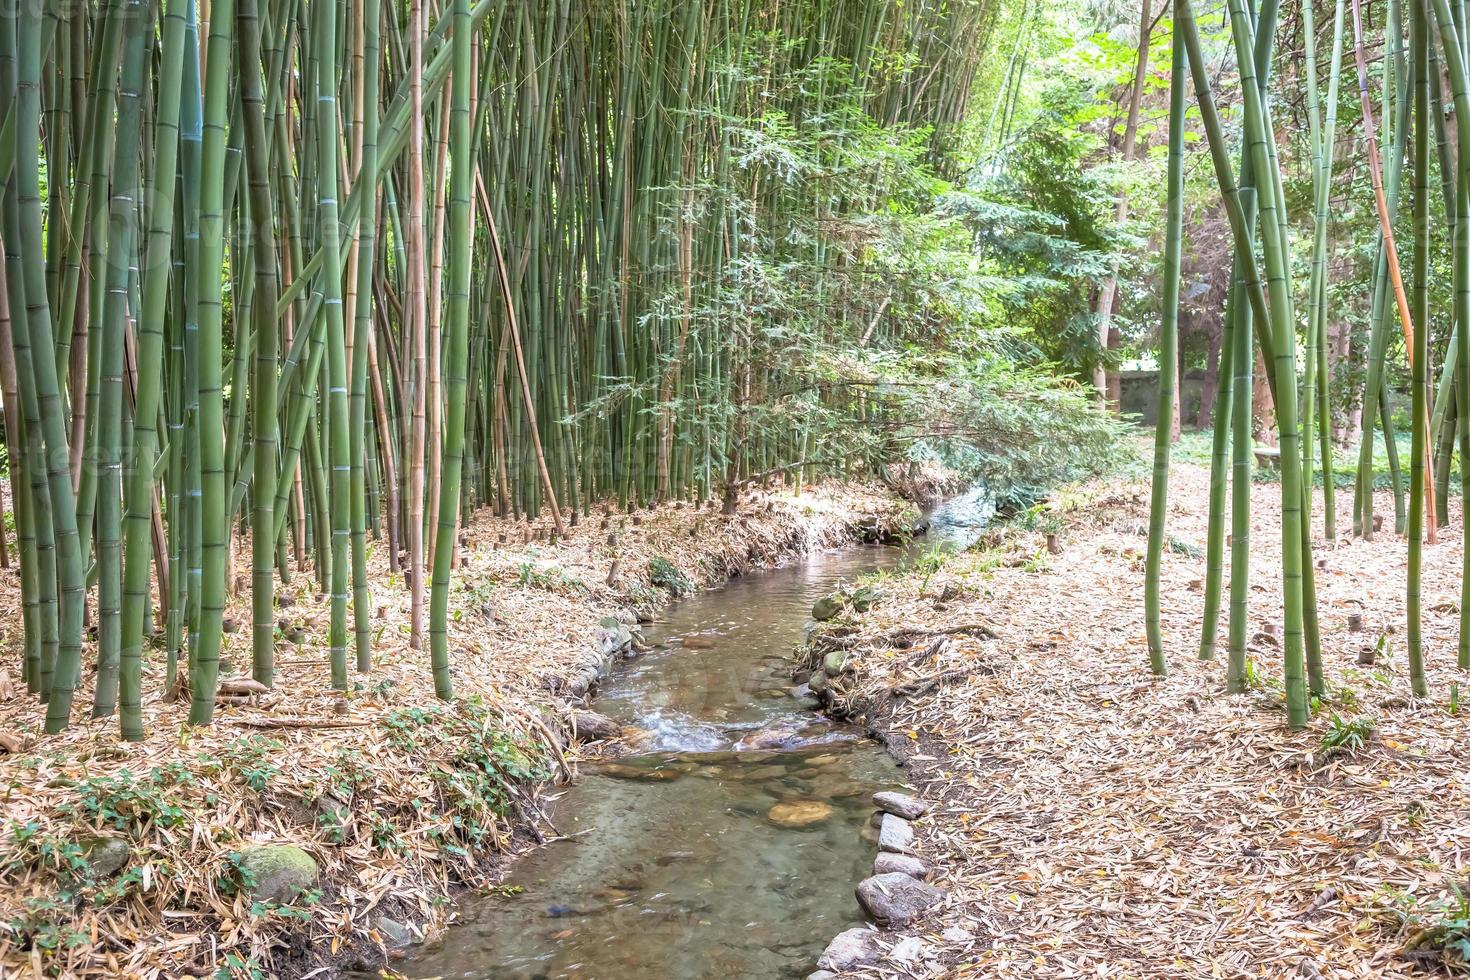 giardino botanico di bambù. concetto di zen, ambiente e vita verde. foto